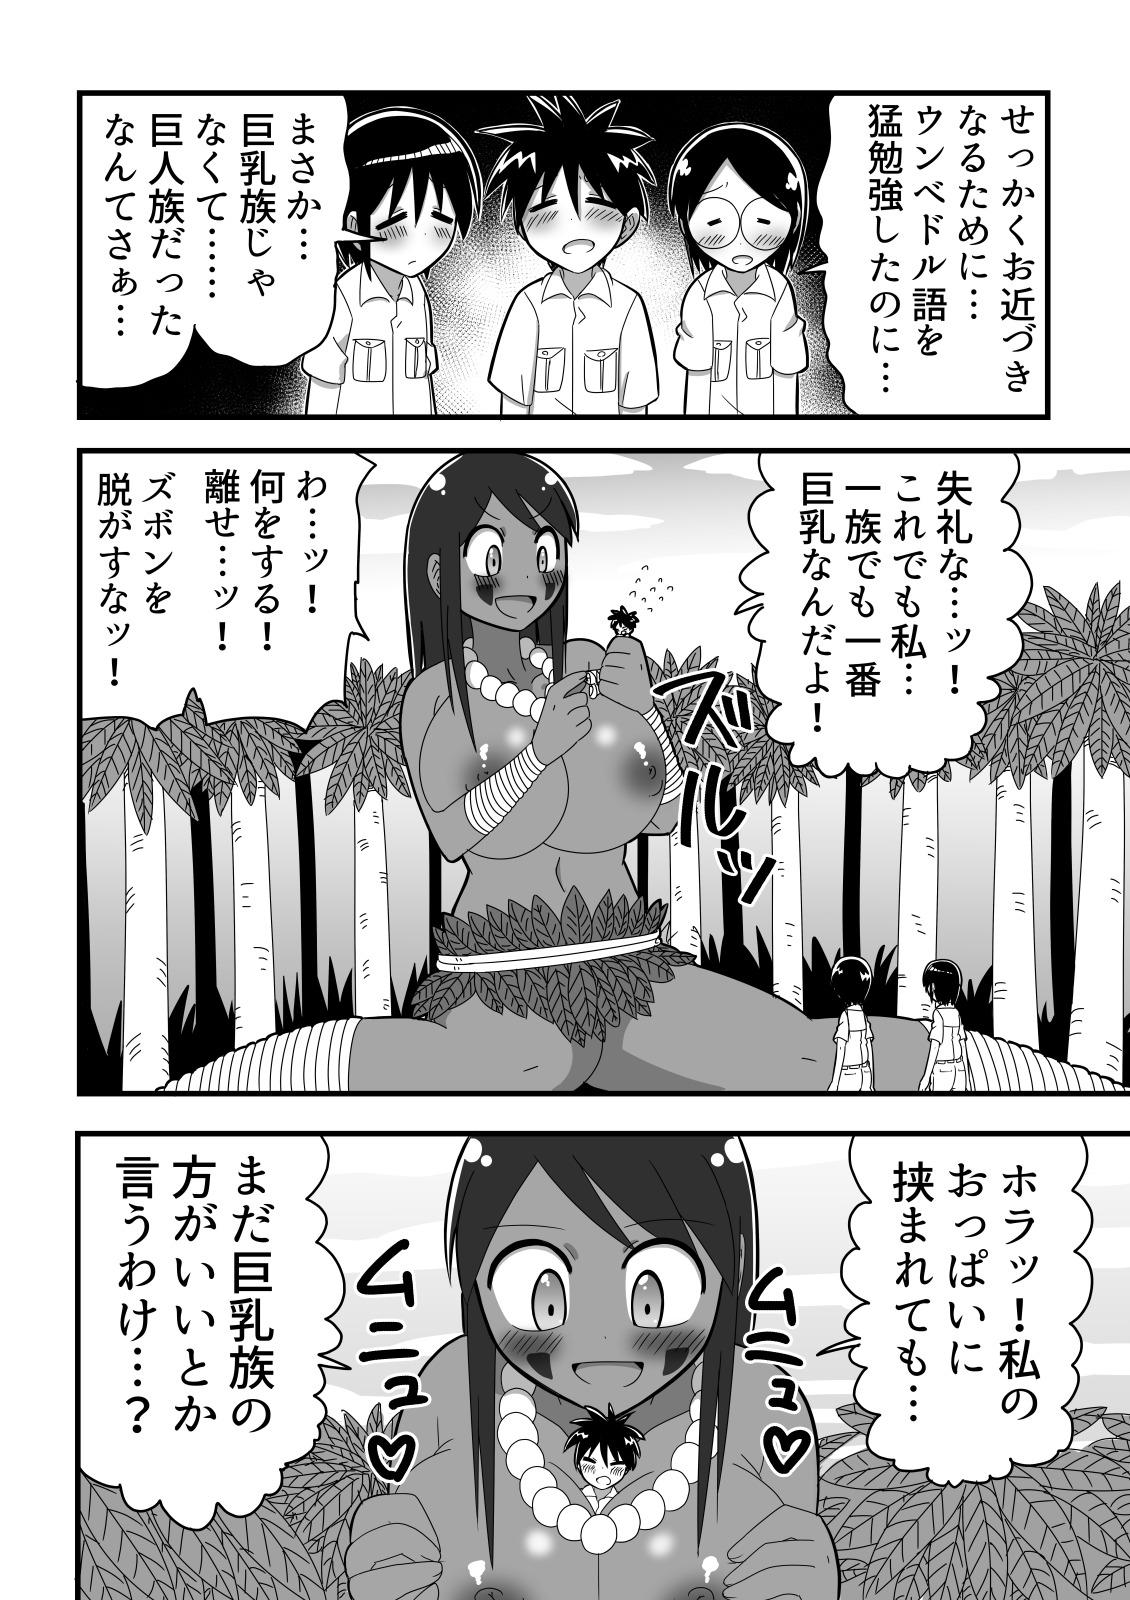 Jingai OneShota Manga Tsumeawase Shuu Vol. 1 9